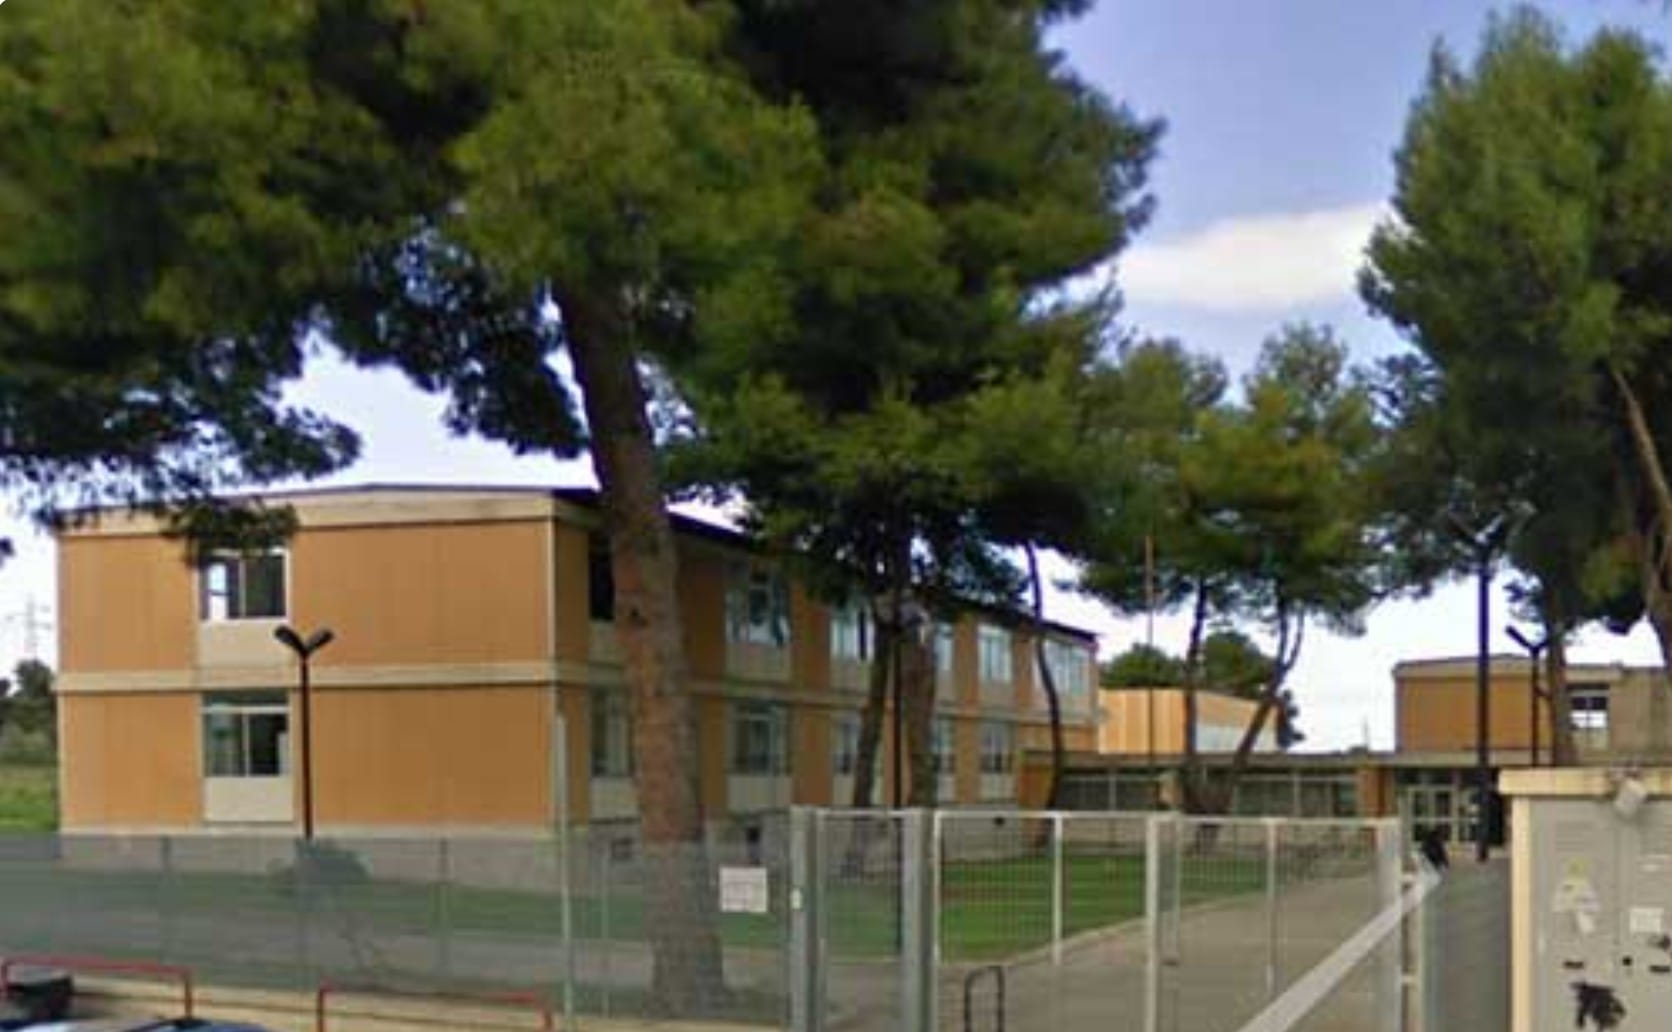 Priolo – Sospesi I lavori di demolizione dell’ex scuola La Pineta.